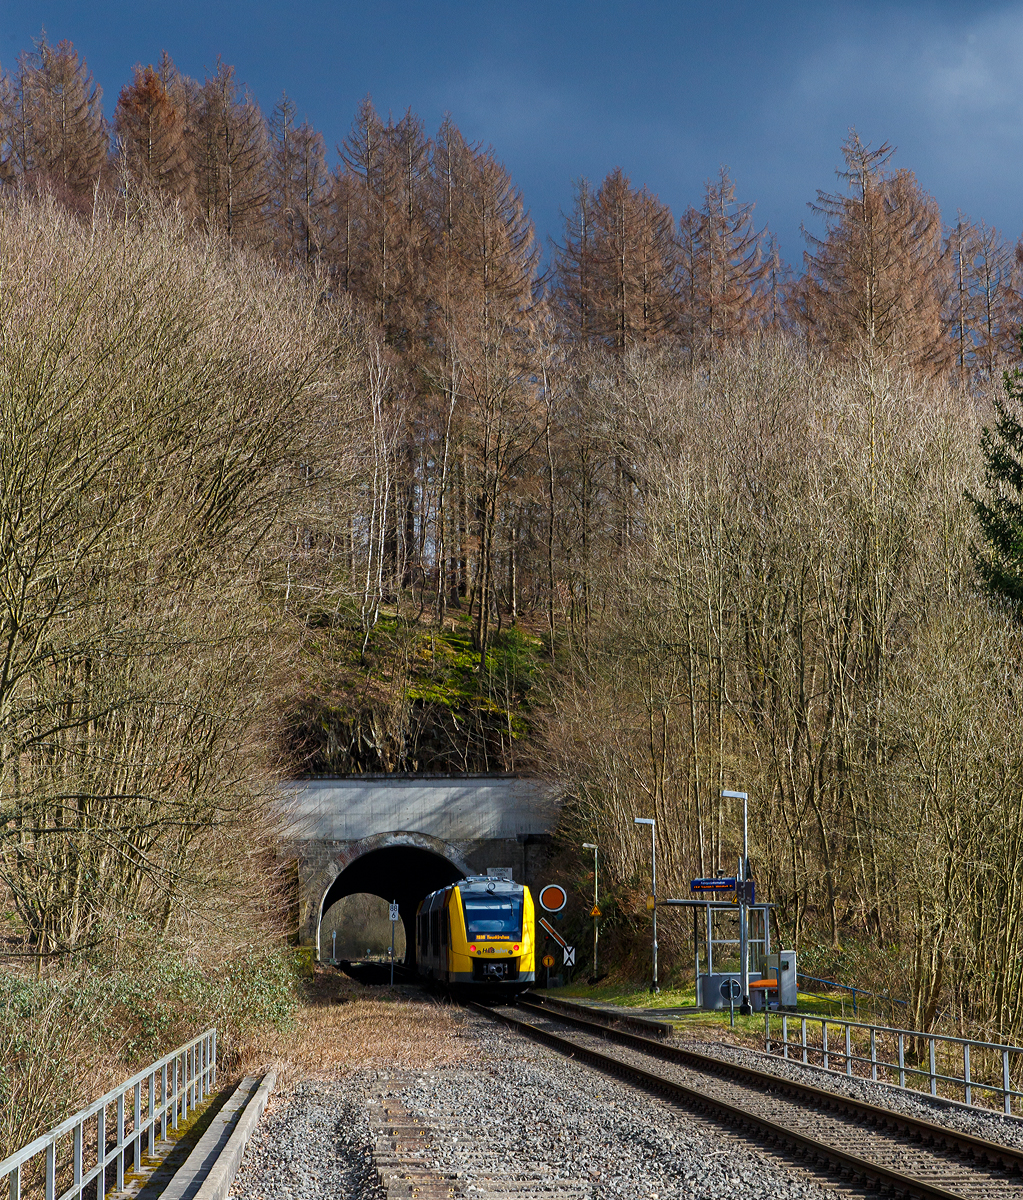 
Der VT 504 (95 80 1648 104-5 D-HEB / 95 80 1648 604-4 D-HEB) ein Alstom Coradia LINT 41 der neuen Generation der HLB (Hessische Landesbahn GmbH), fährt als  RB 96  Hellertalbahn  (Betzdorf/Sieg - Herdorf - Neunkirchen) am 07.03.2020 durch den Hp Herdorf-Königsstollen (Bedarfshaltestelle), gleichdarauf geht es durch den 137 m langen Herdorfer Tunnel. 

Rechts das dreibegriffige Einfahrvorsignal (für den Bf Herdorf) steht auf Signal Vr 2 – Langsamfahrt erwarten (Die Runde orange Scheibe mit schwarzem Ring und weißem Rand steht senkrecht, der Flügel, mit gleicher Farbanordnung wie die Scheibe, zeigt mit der Spitze nach rechts abwärts. Rechts daneben die Vorsignaltafel (Signal Ne 2). So wird der Standort desVorsignales eindeutig gekennzeichnet.